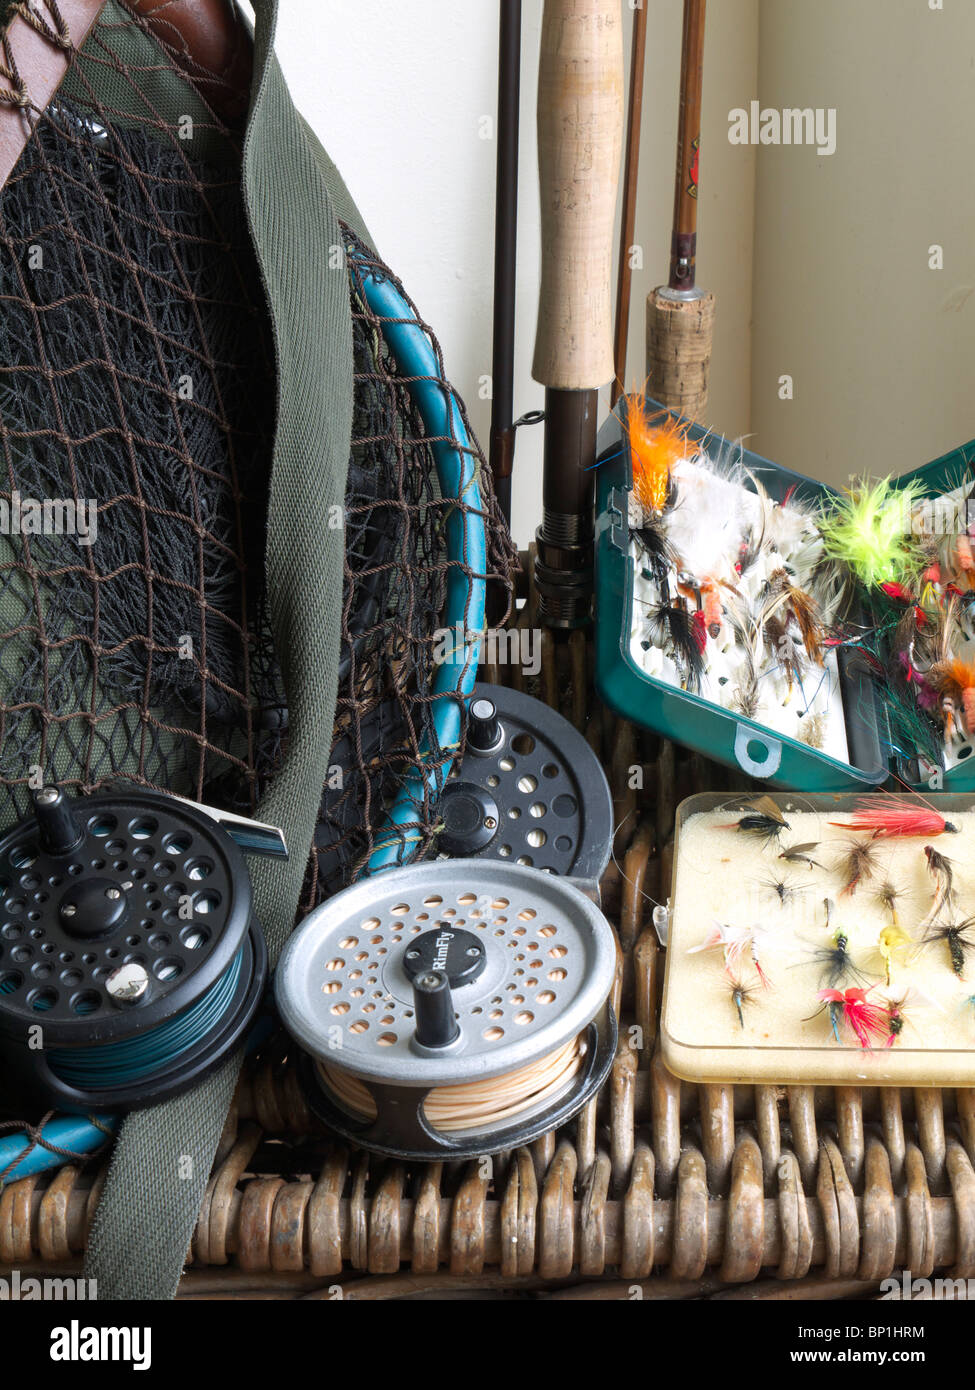 Pesca con Mosca abordar en cesta de mimbre, Inglaterra, Reino Unido. Foto de stock